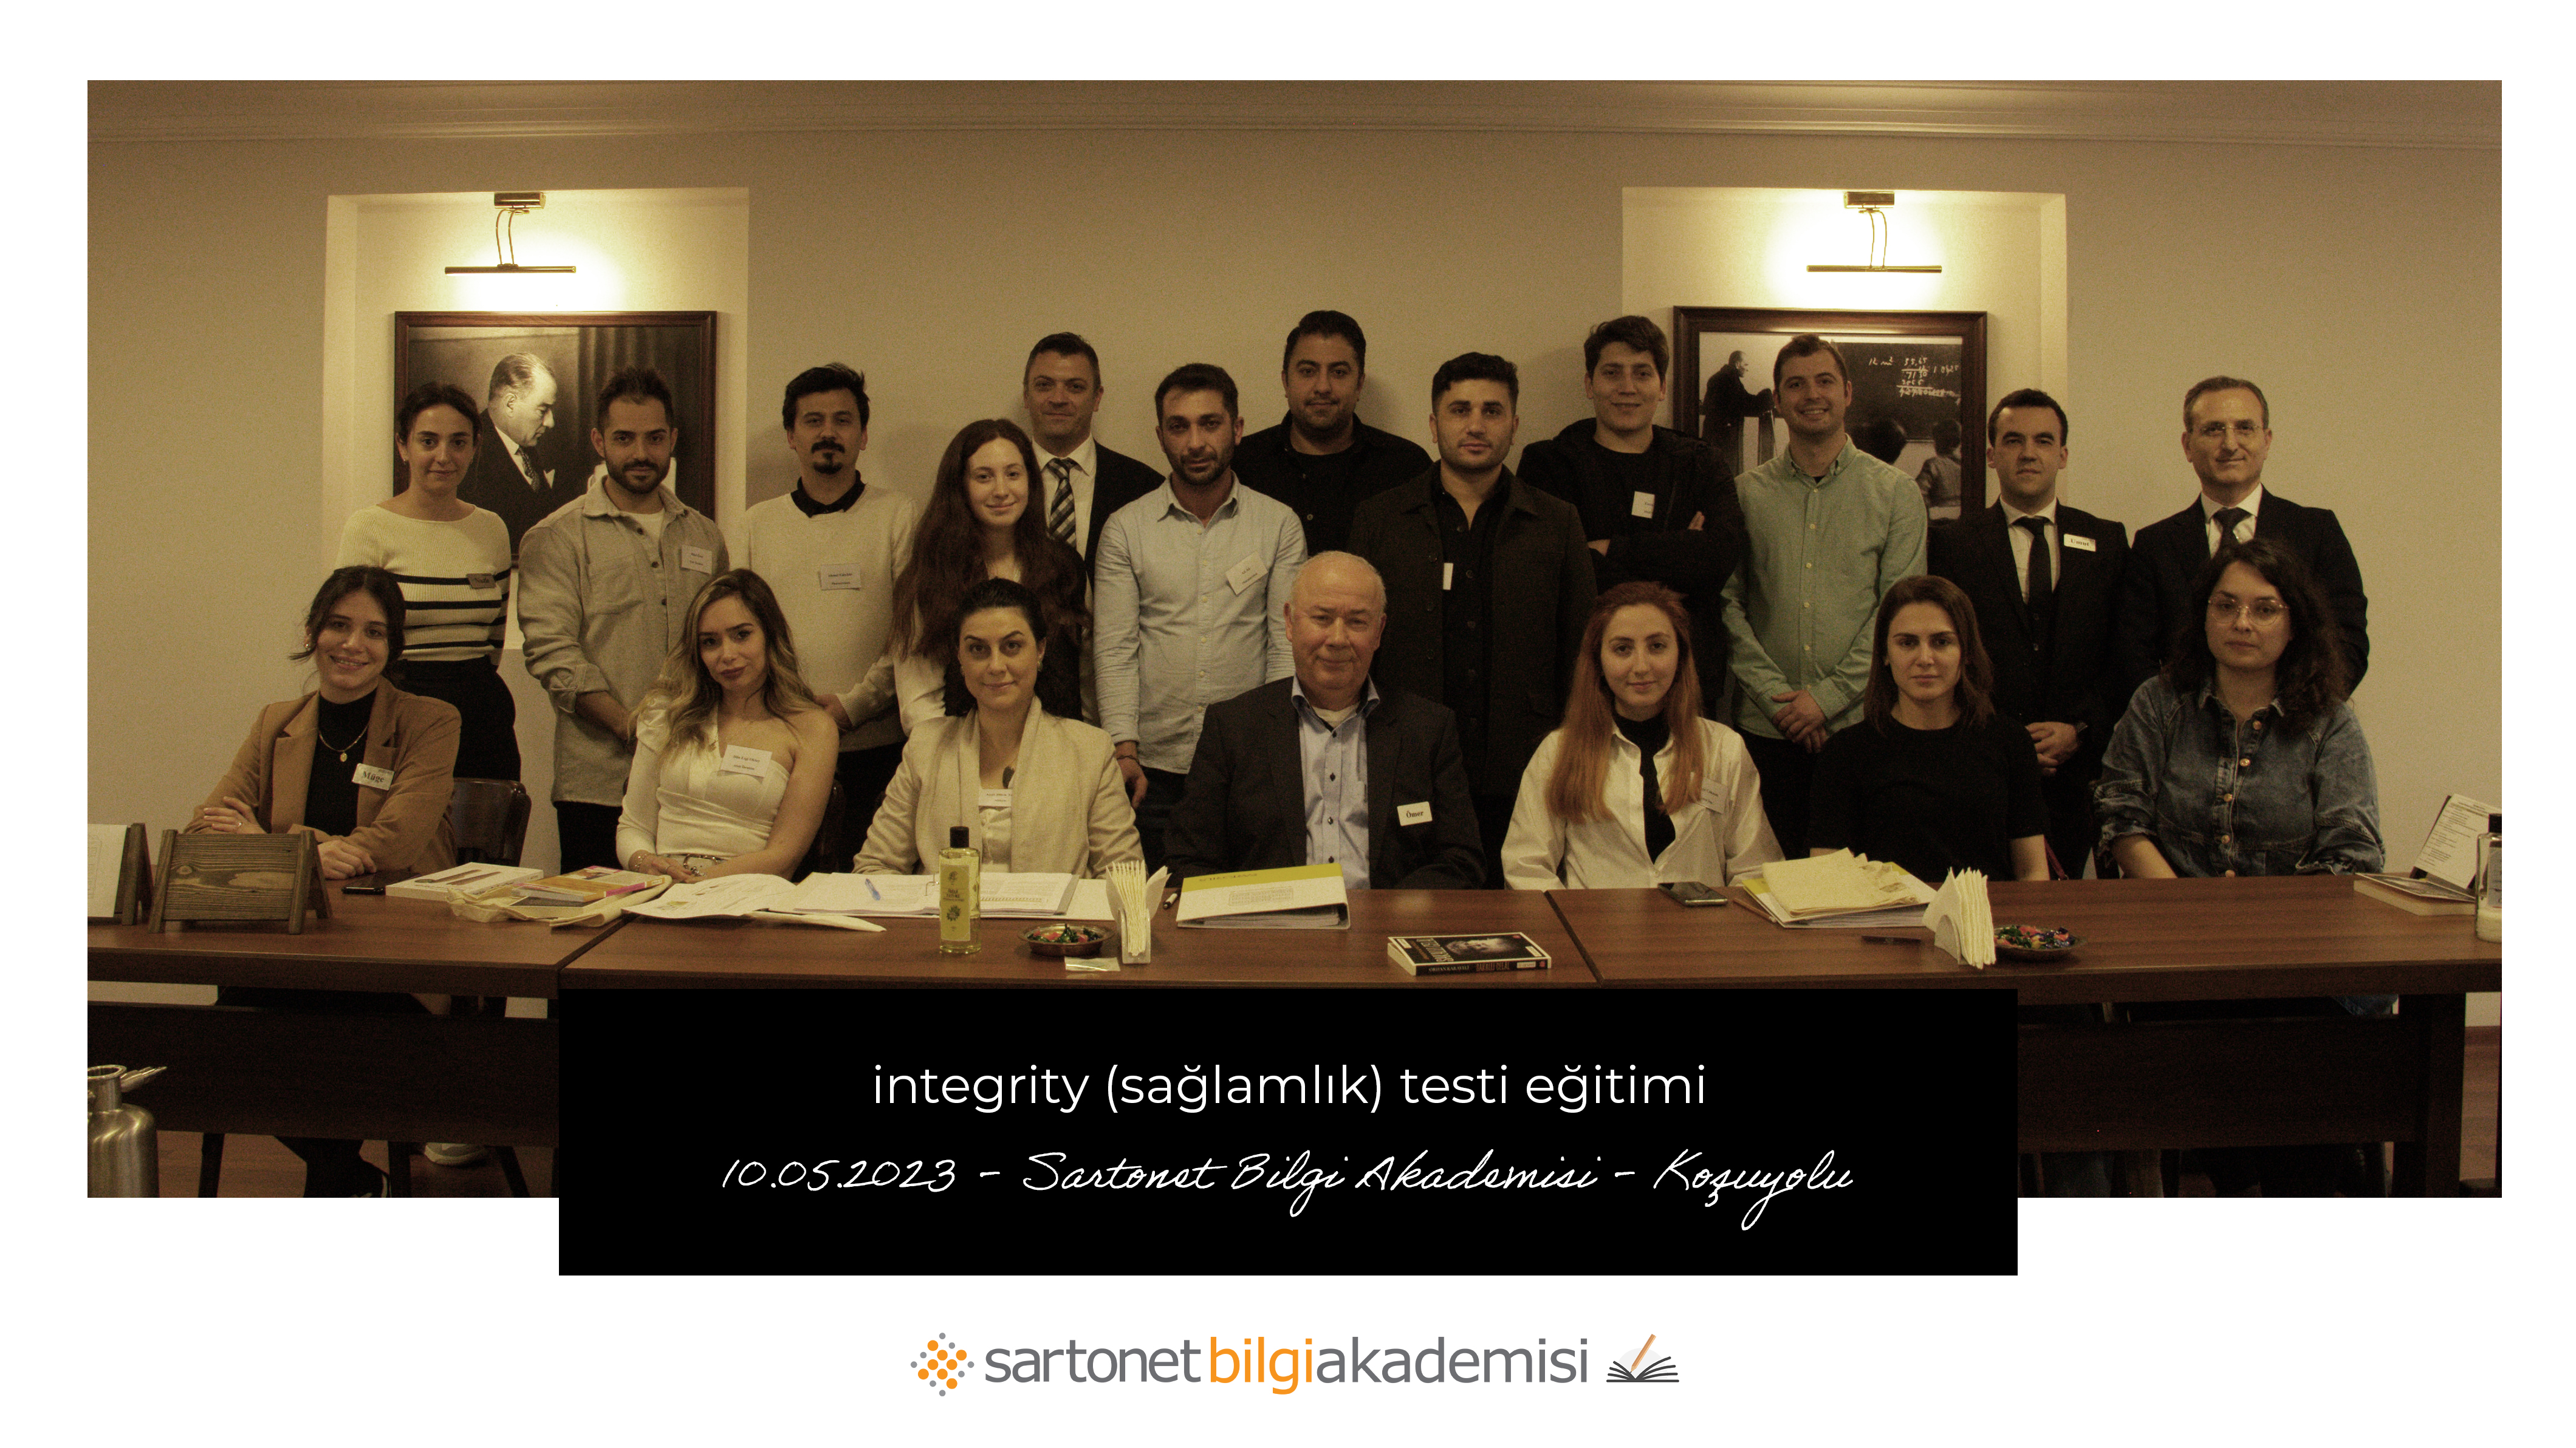 Sartonet Bilgi Akademisi’nde Integrity Test Eğitimine, Katılımcılardan Yine Tam Not!